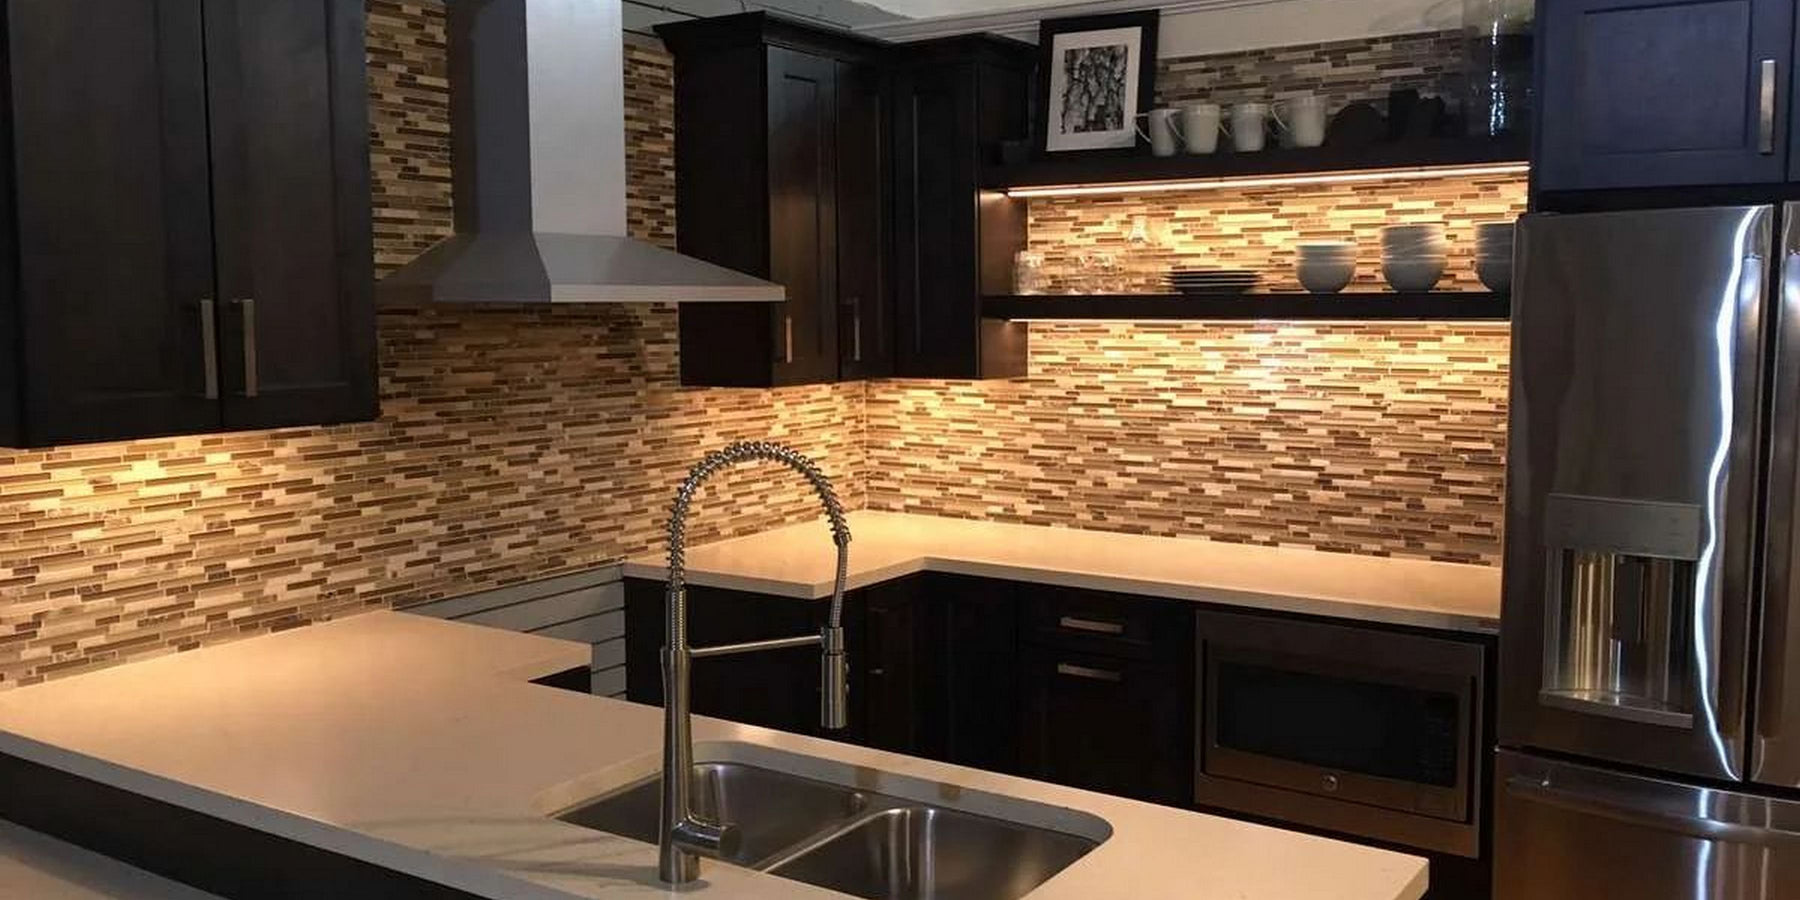 White adjustable under cabinet LED kitchen lights